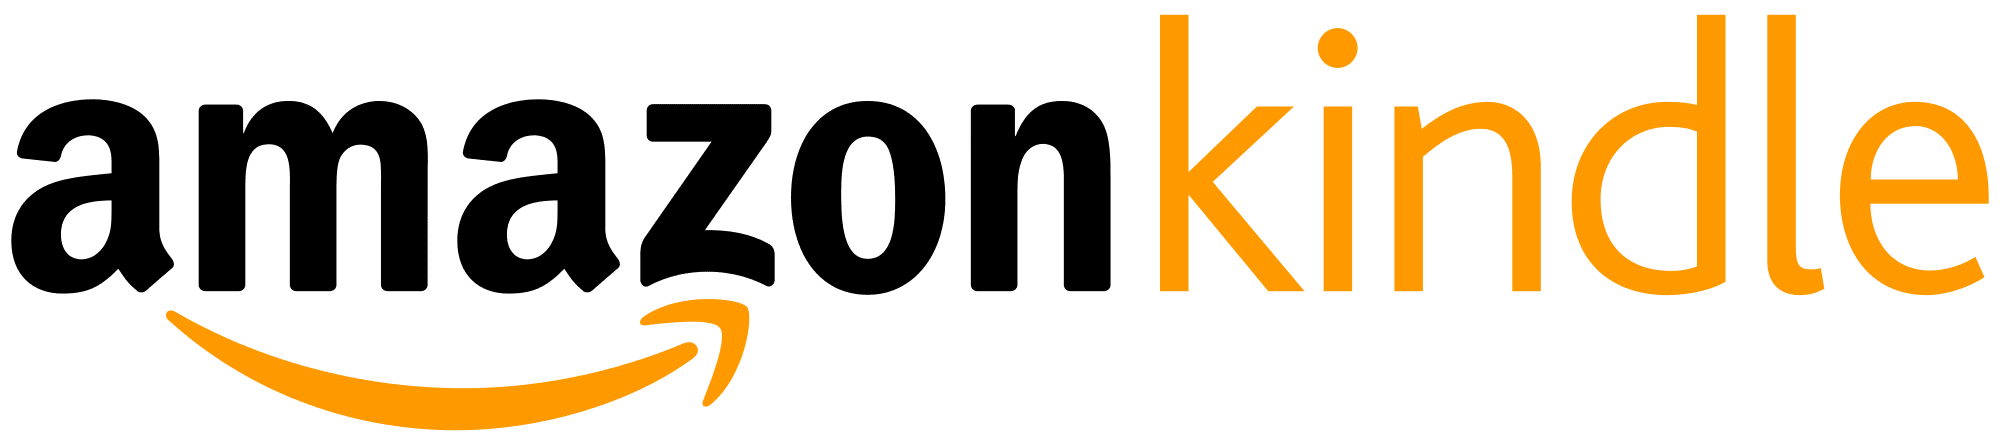 Amazon Kindle logo.svg 